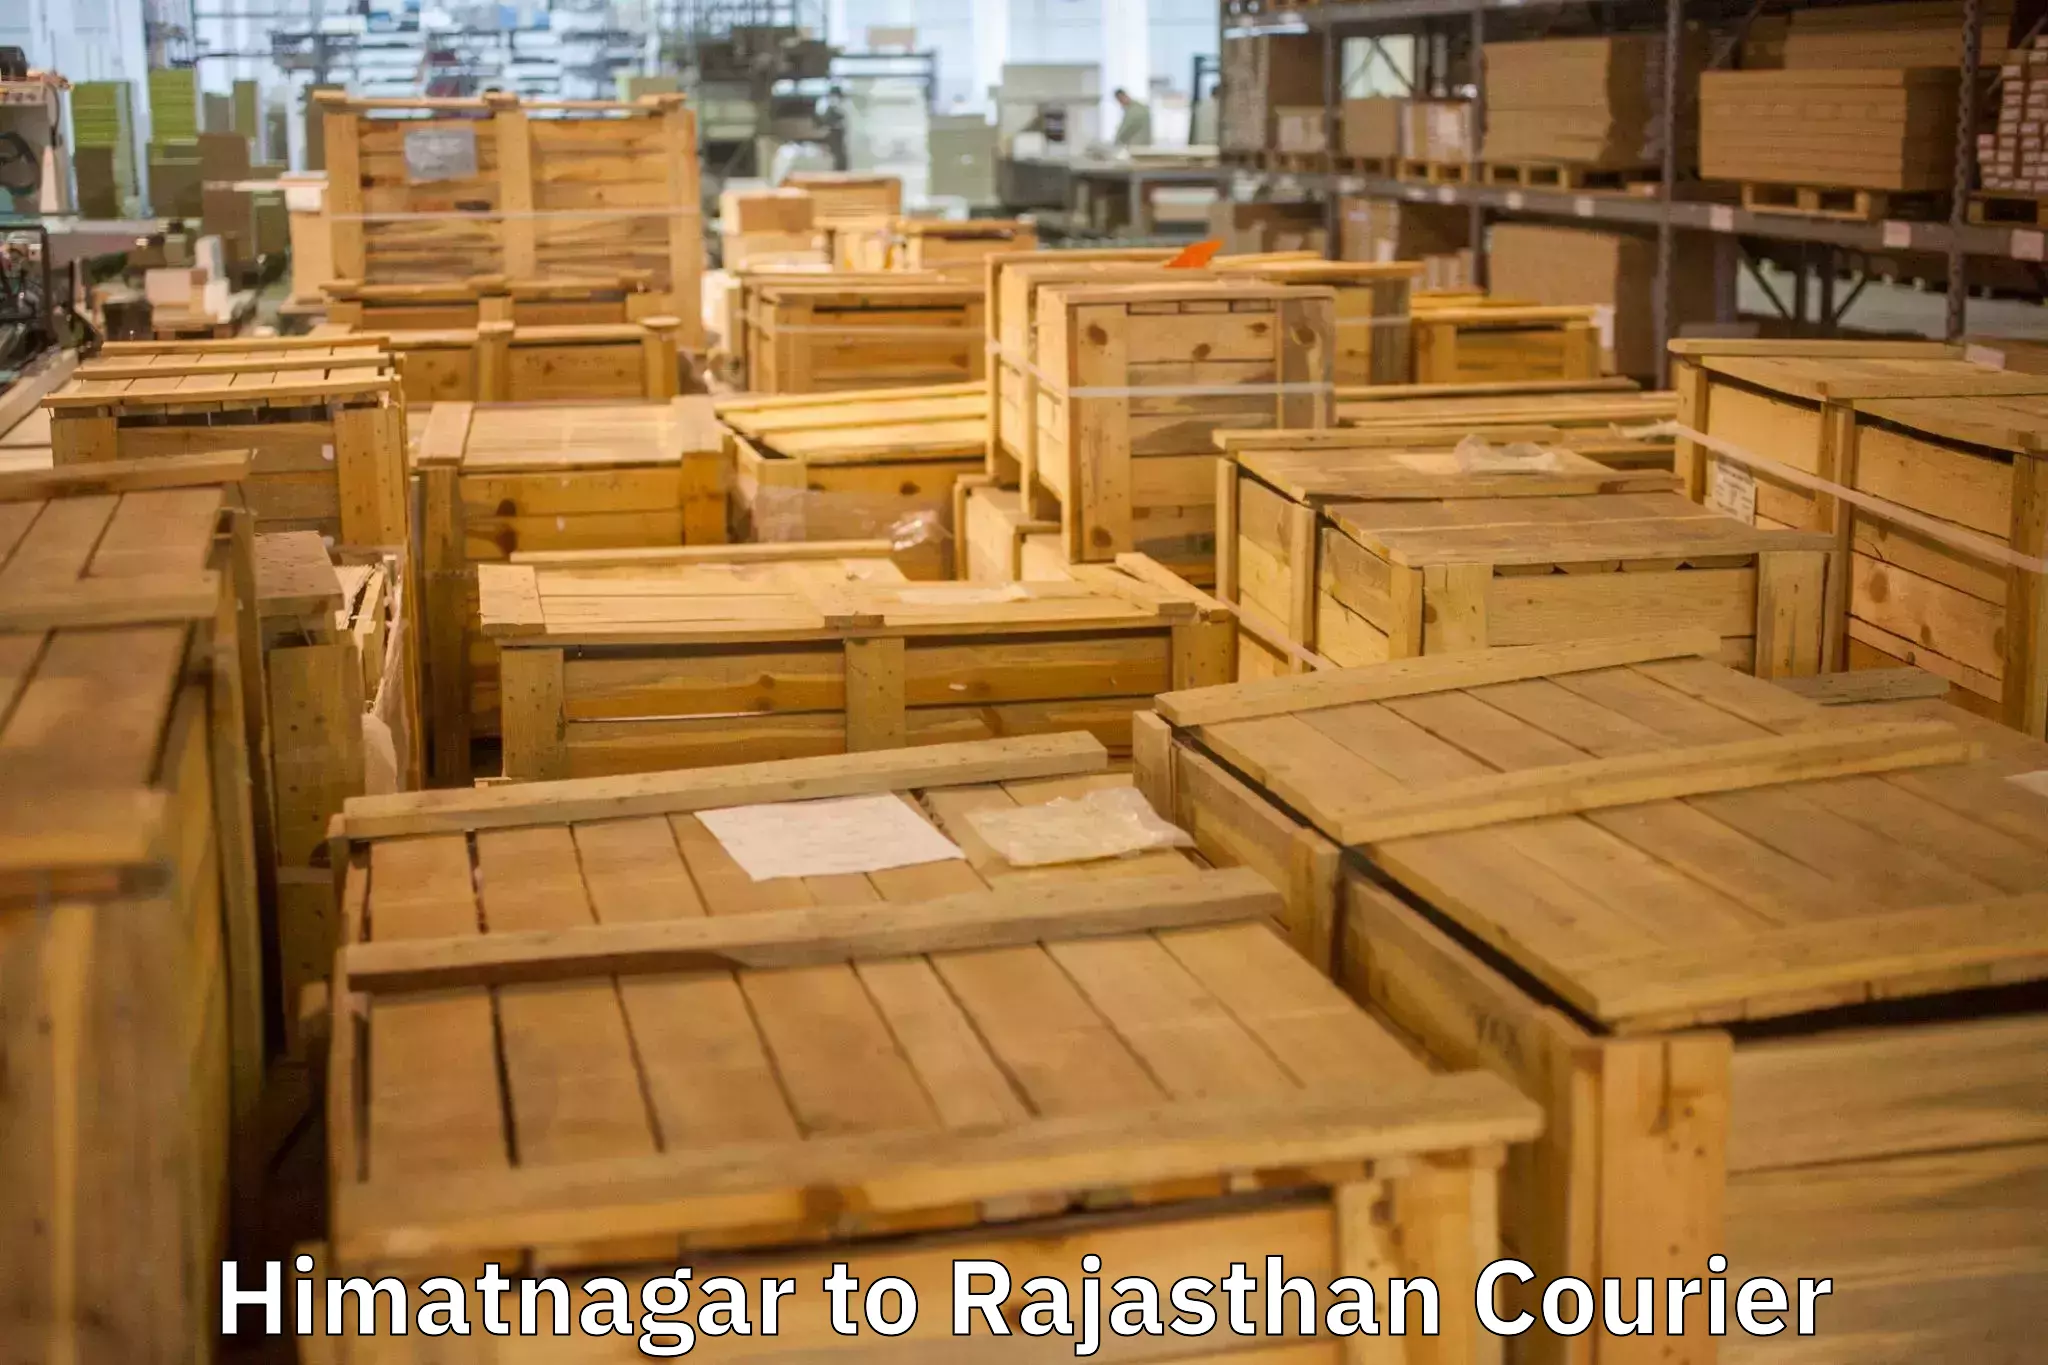 Reliable furniture transport Himatnagar to Viratnagar